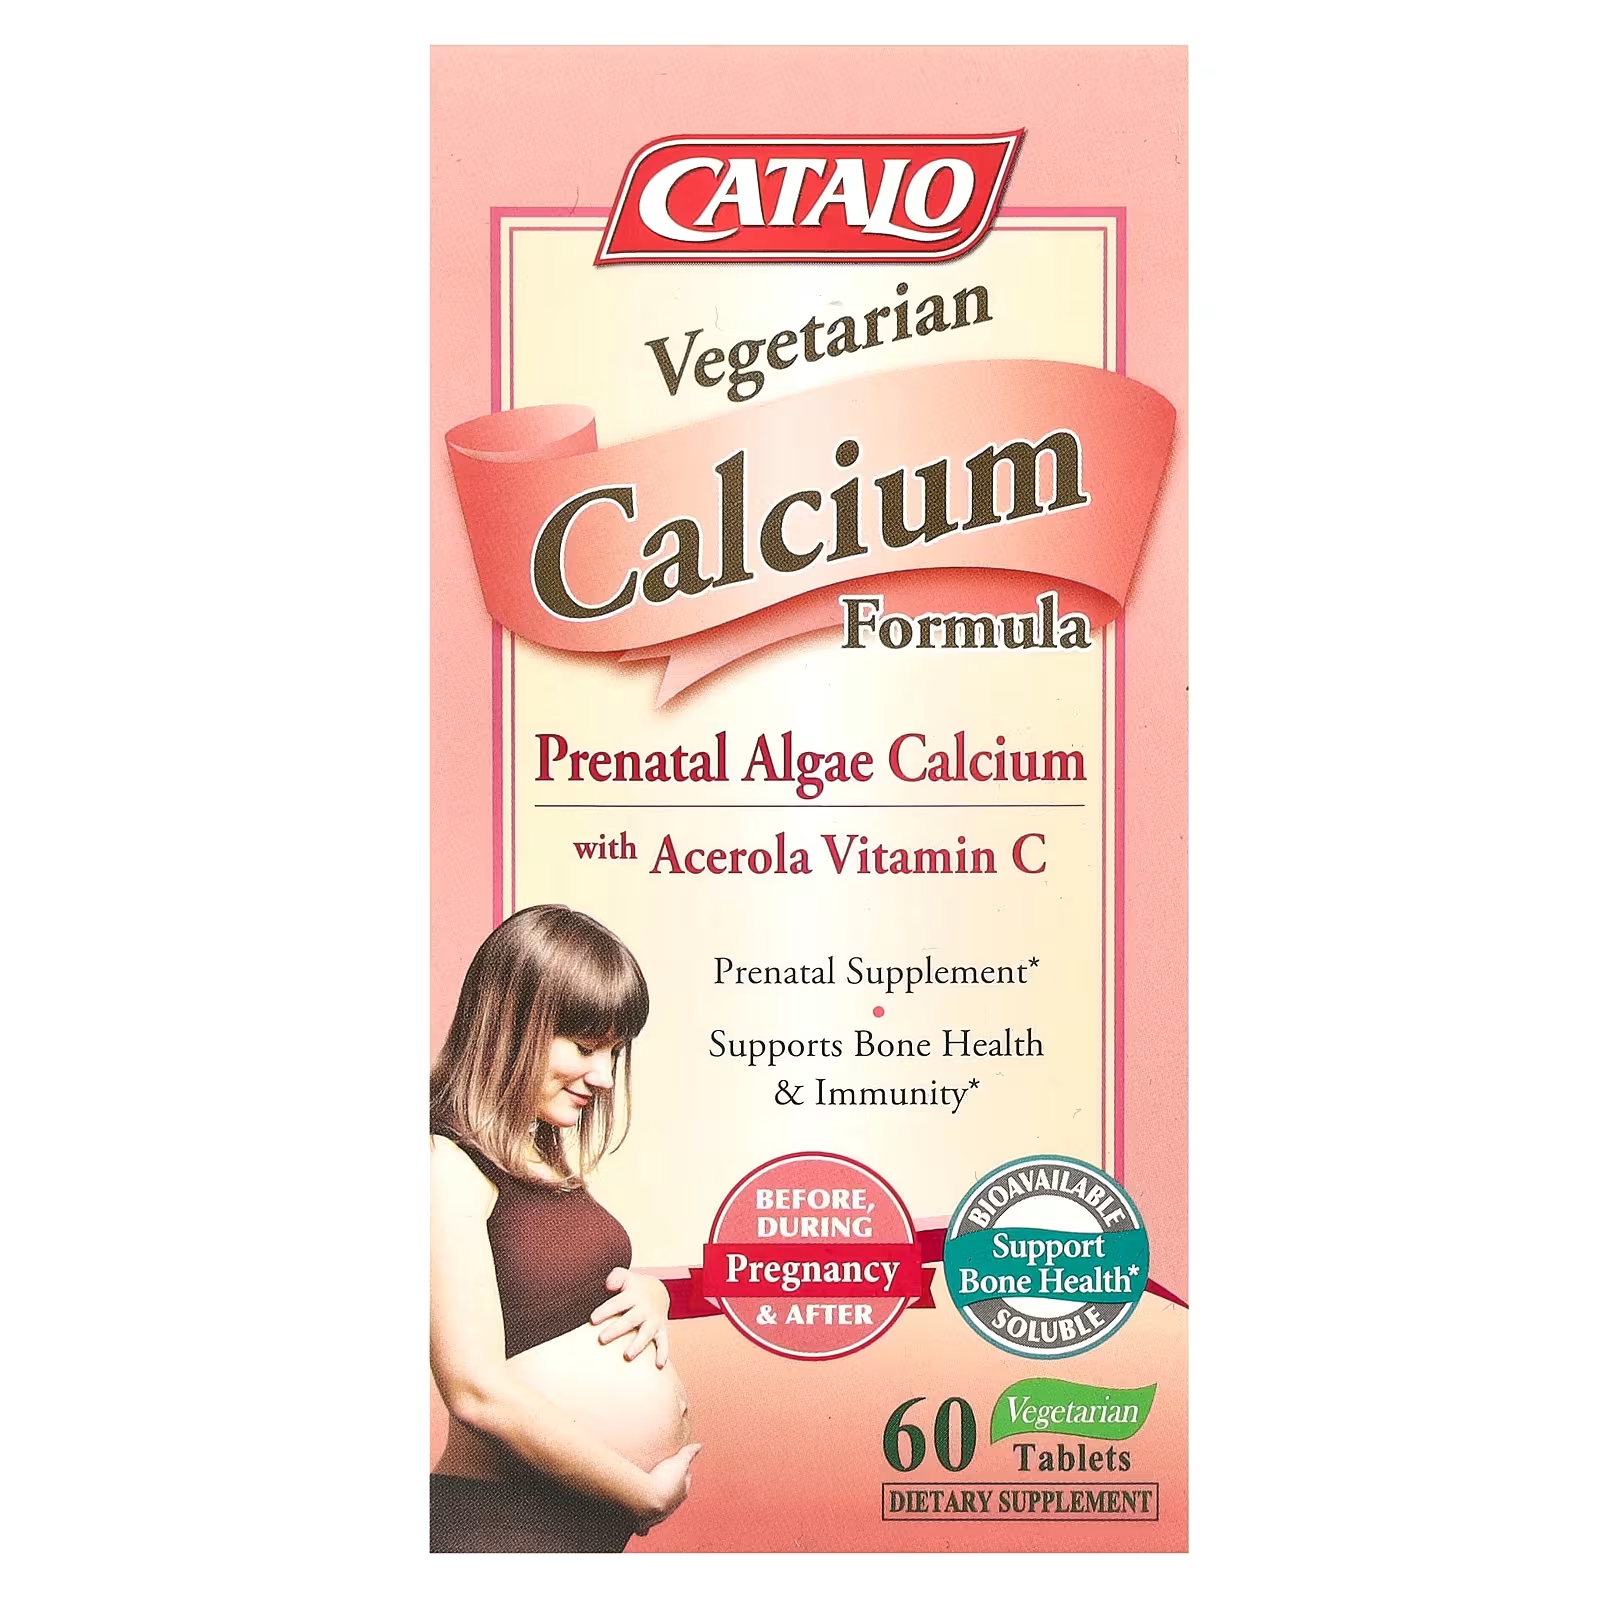 Вегетарианская формула кальция Catalo Naturals для беременных с витамином С, 60 вегетарианских таблеток